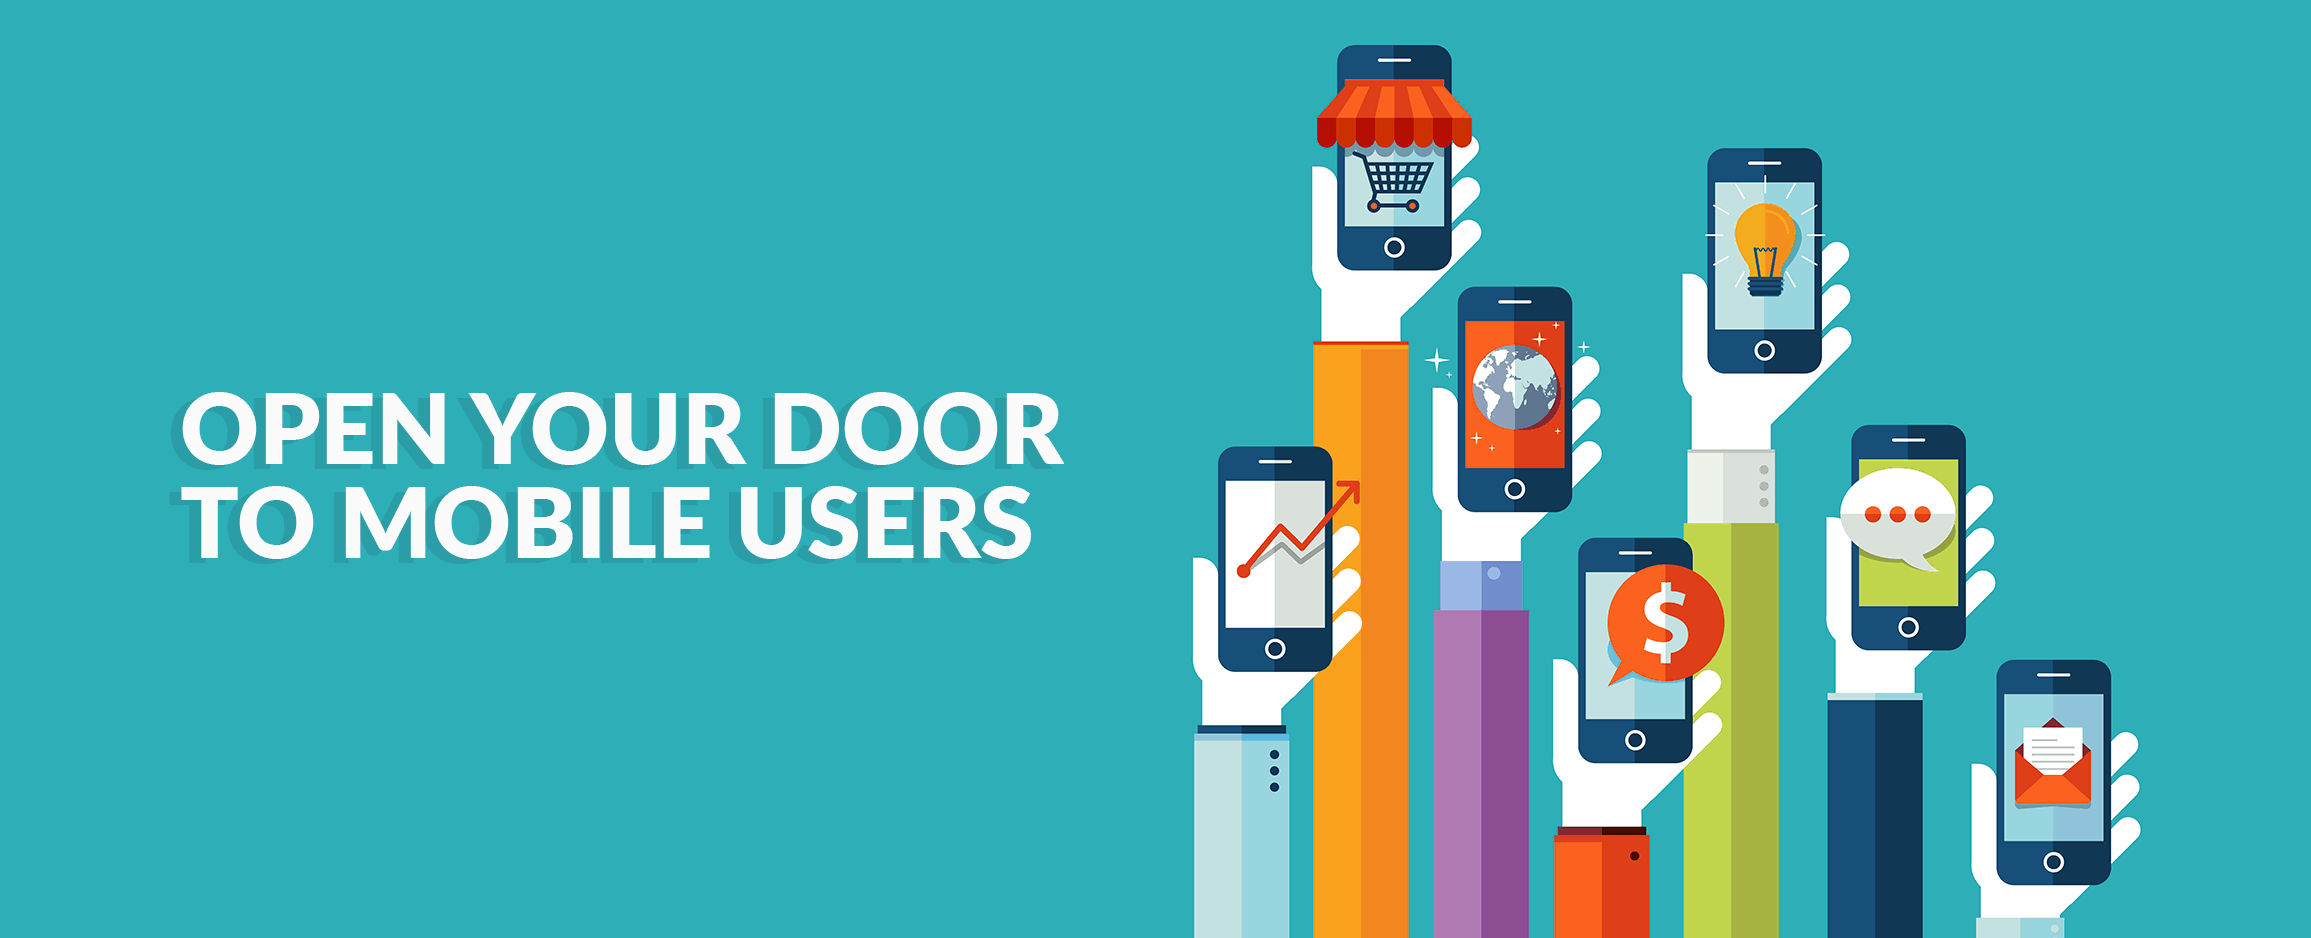 Open Your Door To Mobile Users